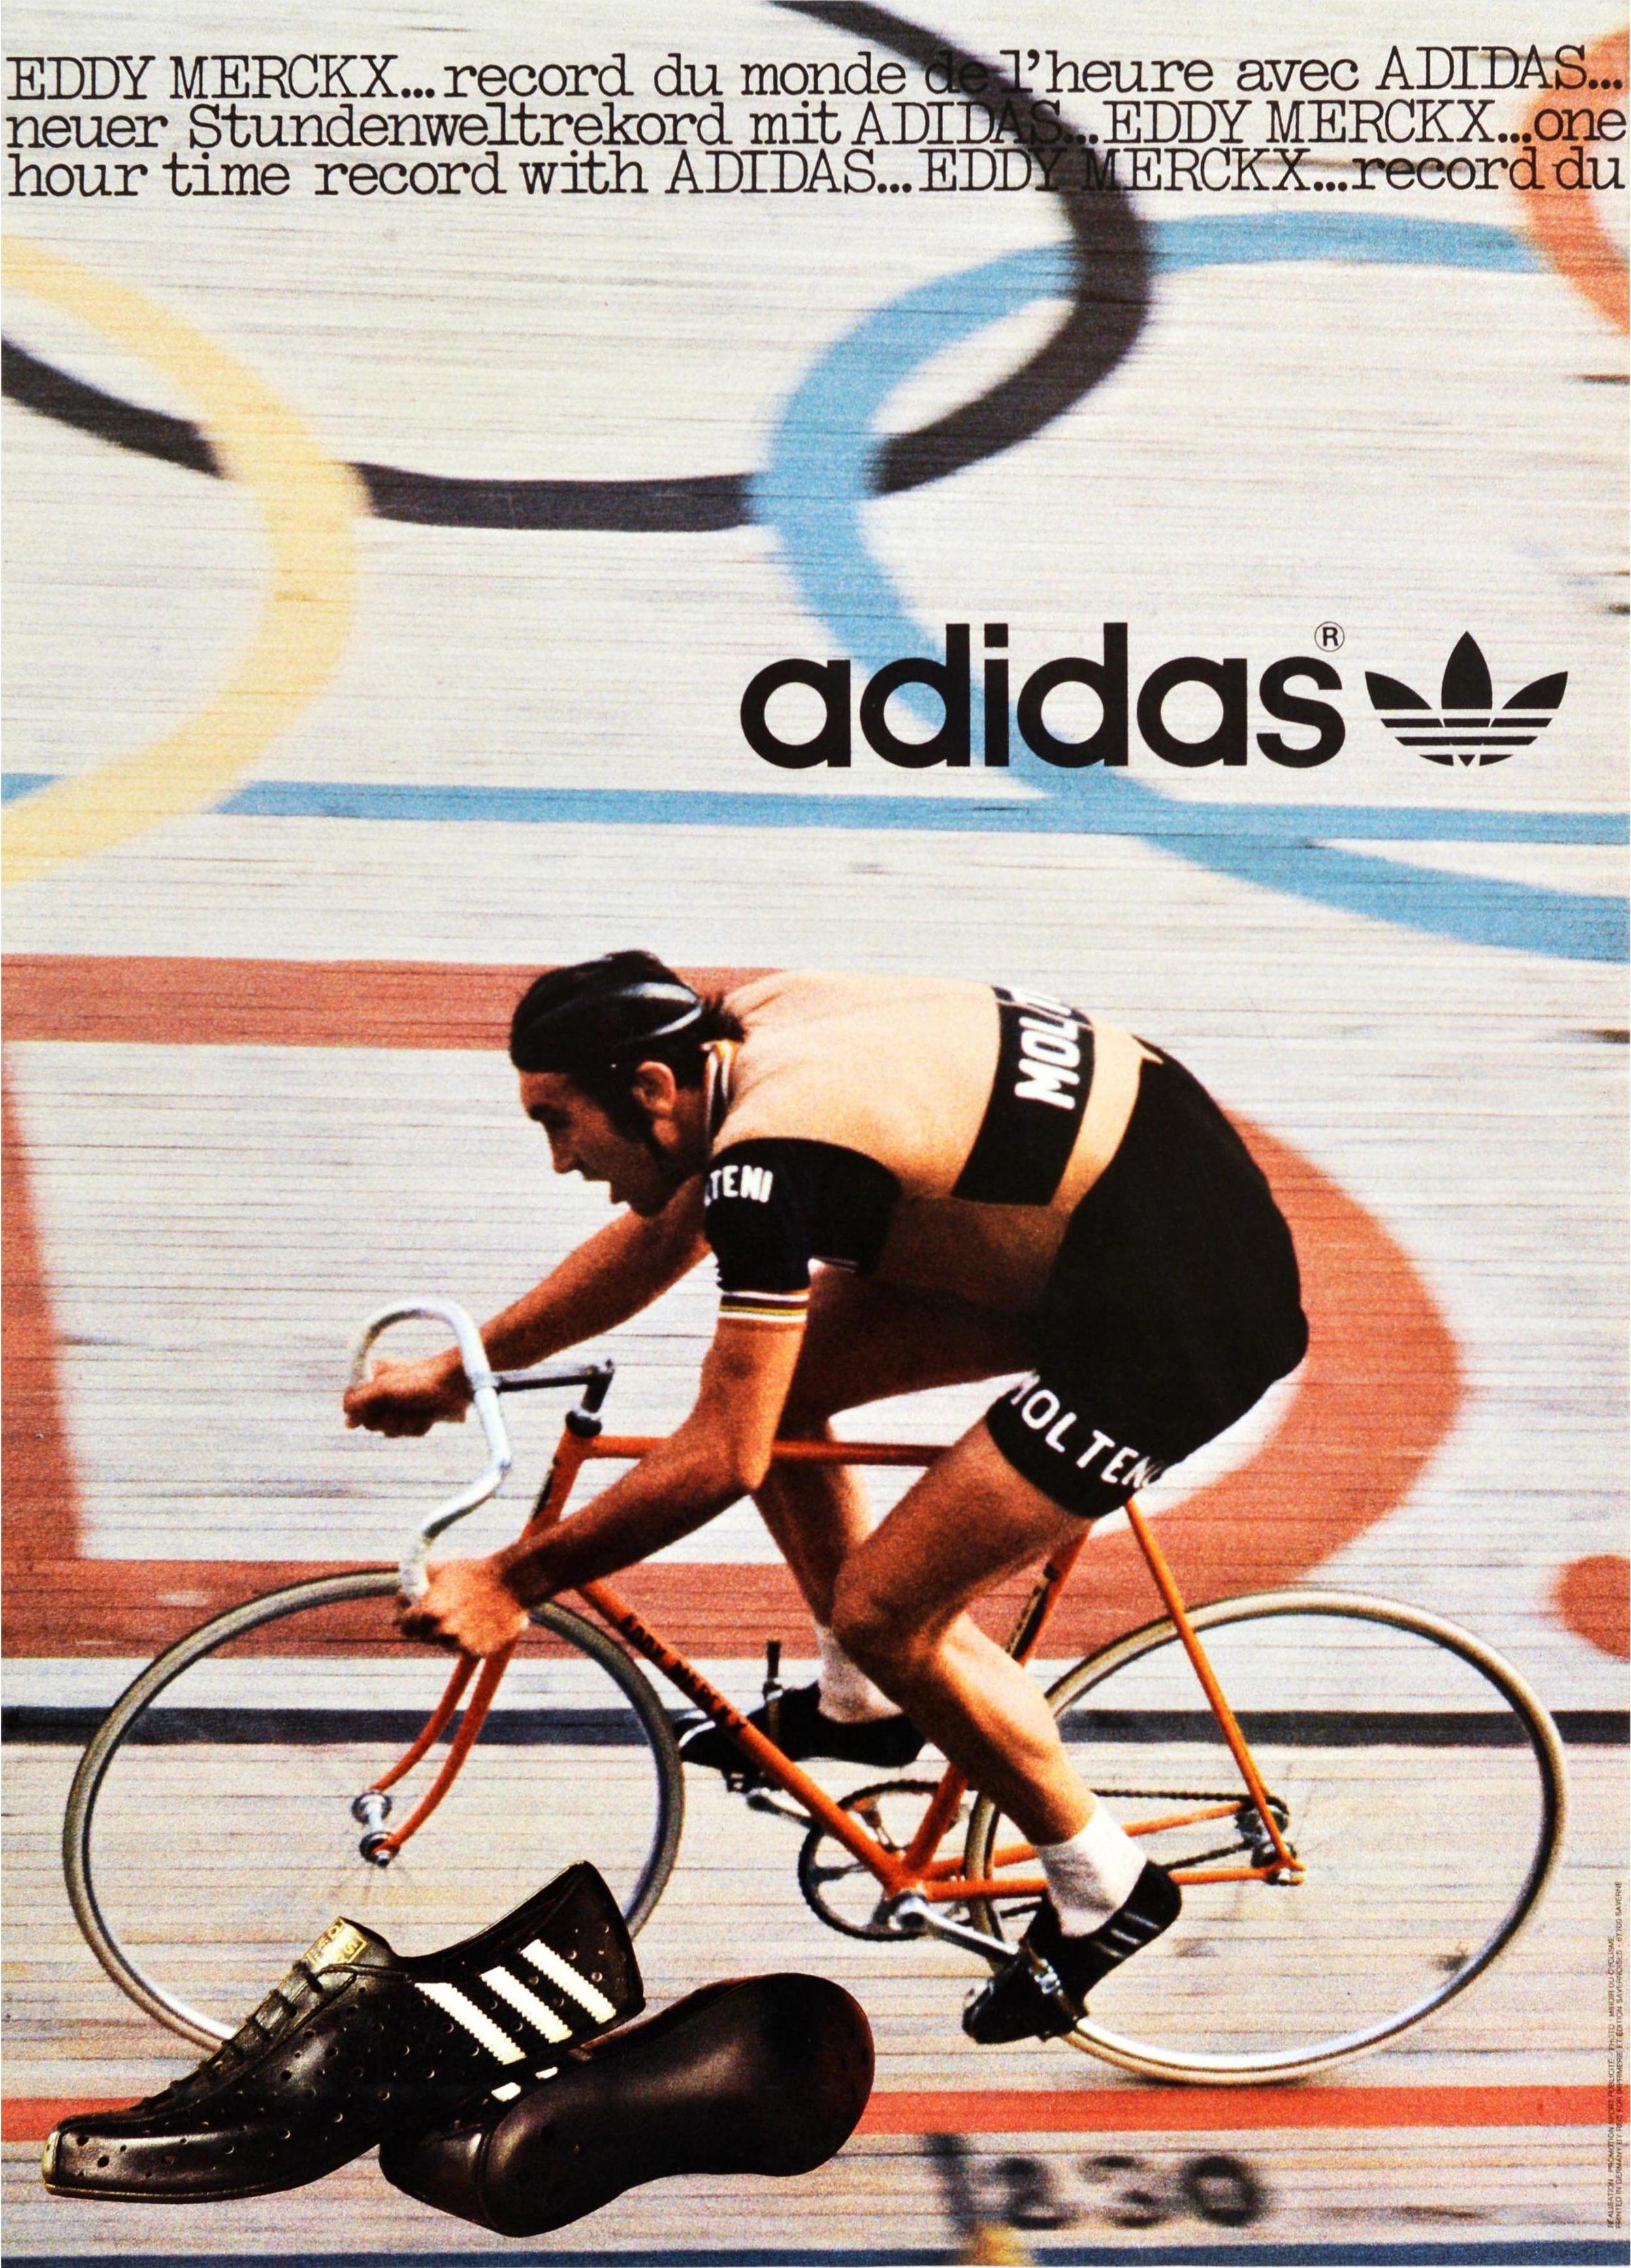 Print Unknown - Affiche vintage d'origine Adidas - Chaussures de sport - Eddy Merckx - Classement mondial des cyclistes lors d'une course